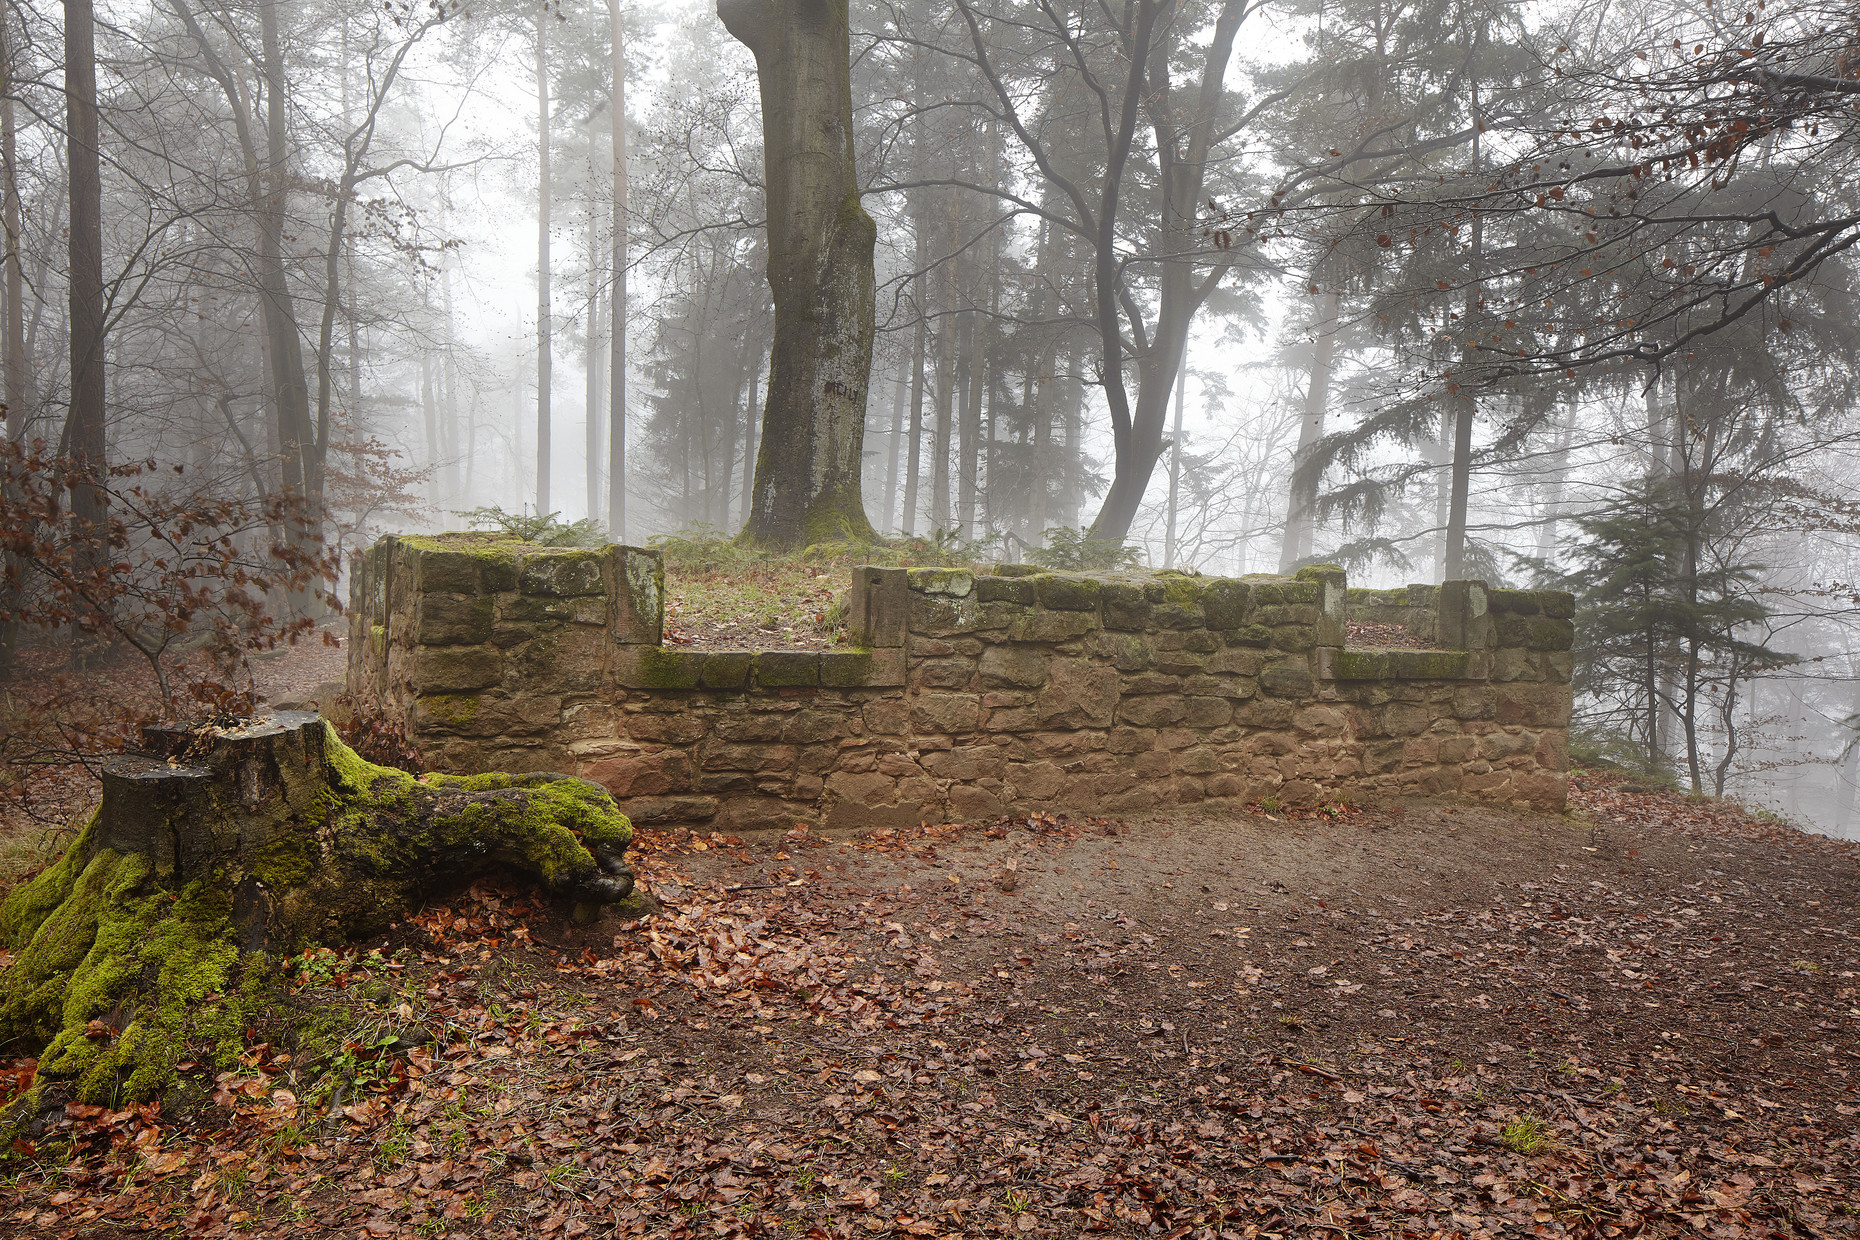 Mauerrest im Wald, bei Nebel